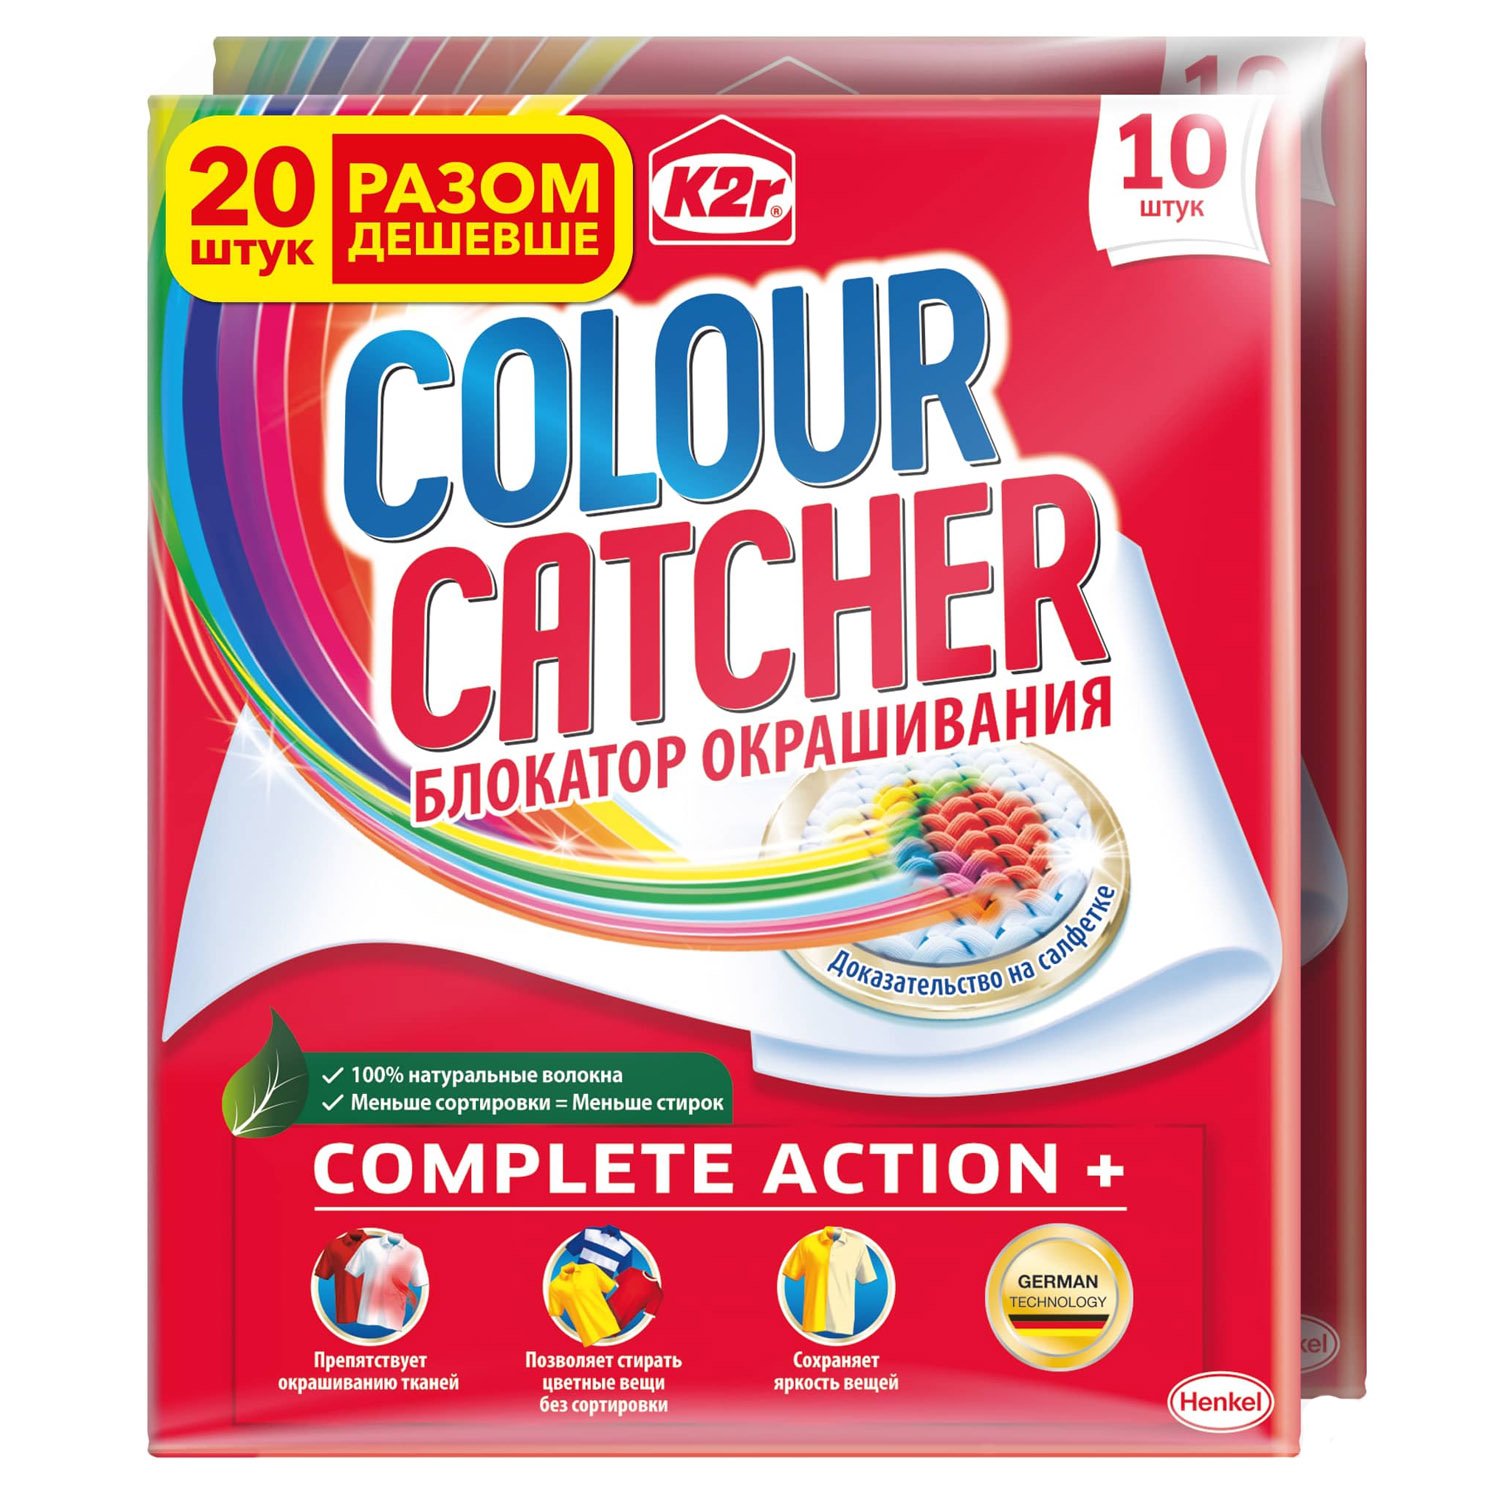 Салфетки для стирки K2r Colour Catcher цветопоглощение, 20 шт. - фото 1